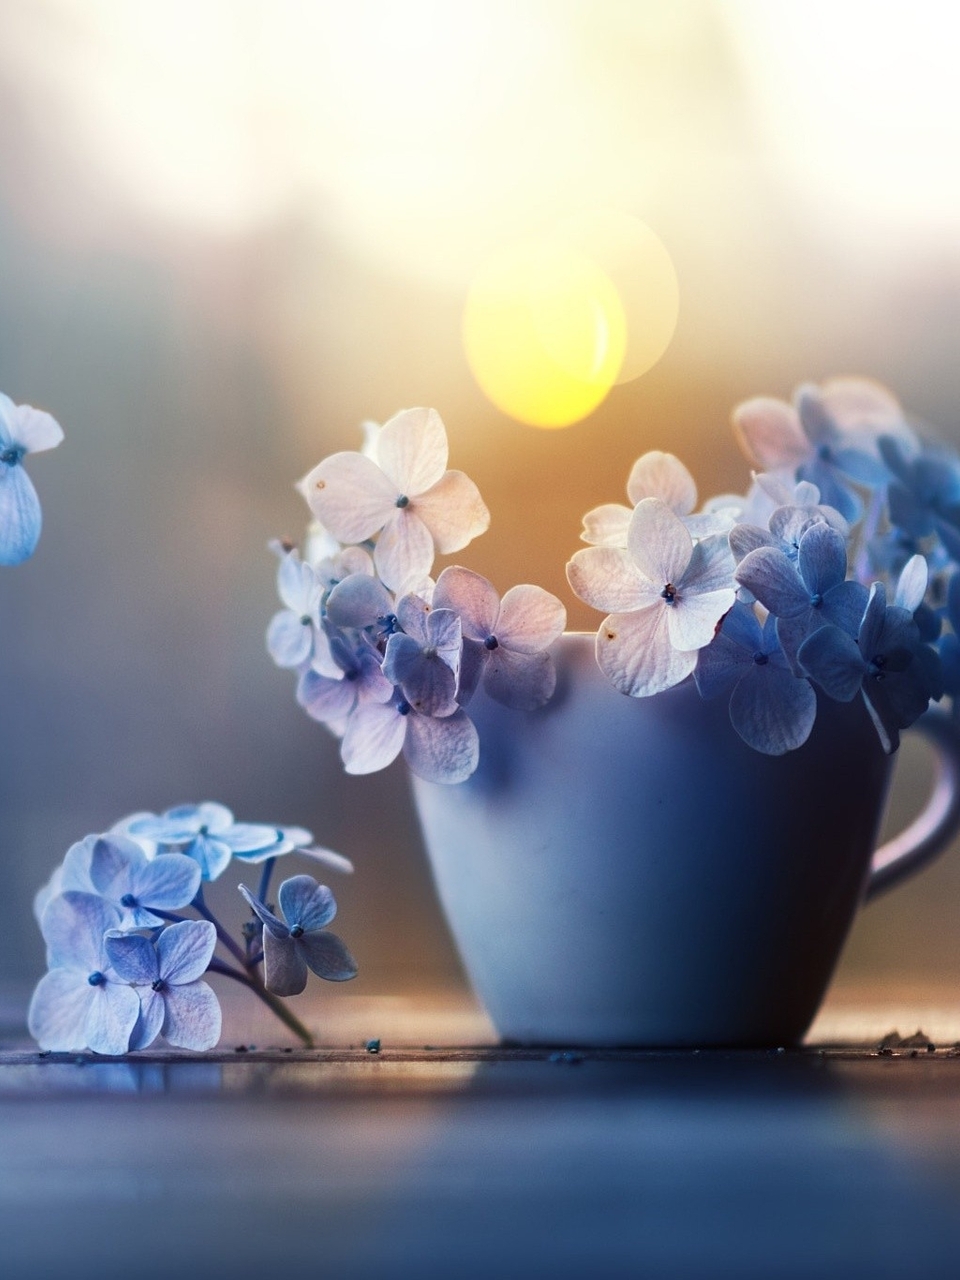 Image: Hydrangea, petals, mug, highlights